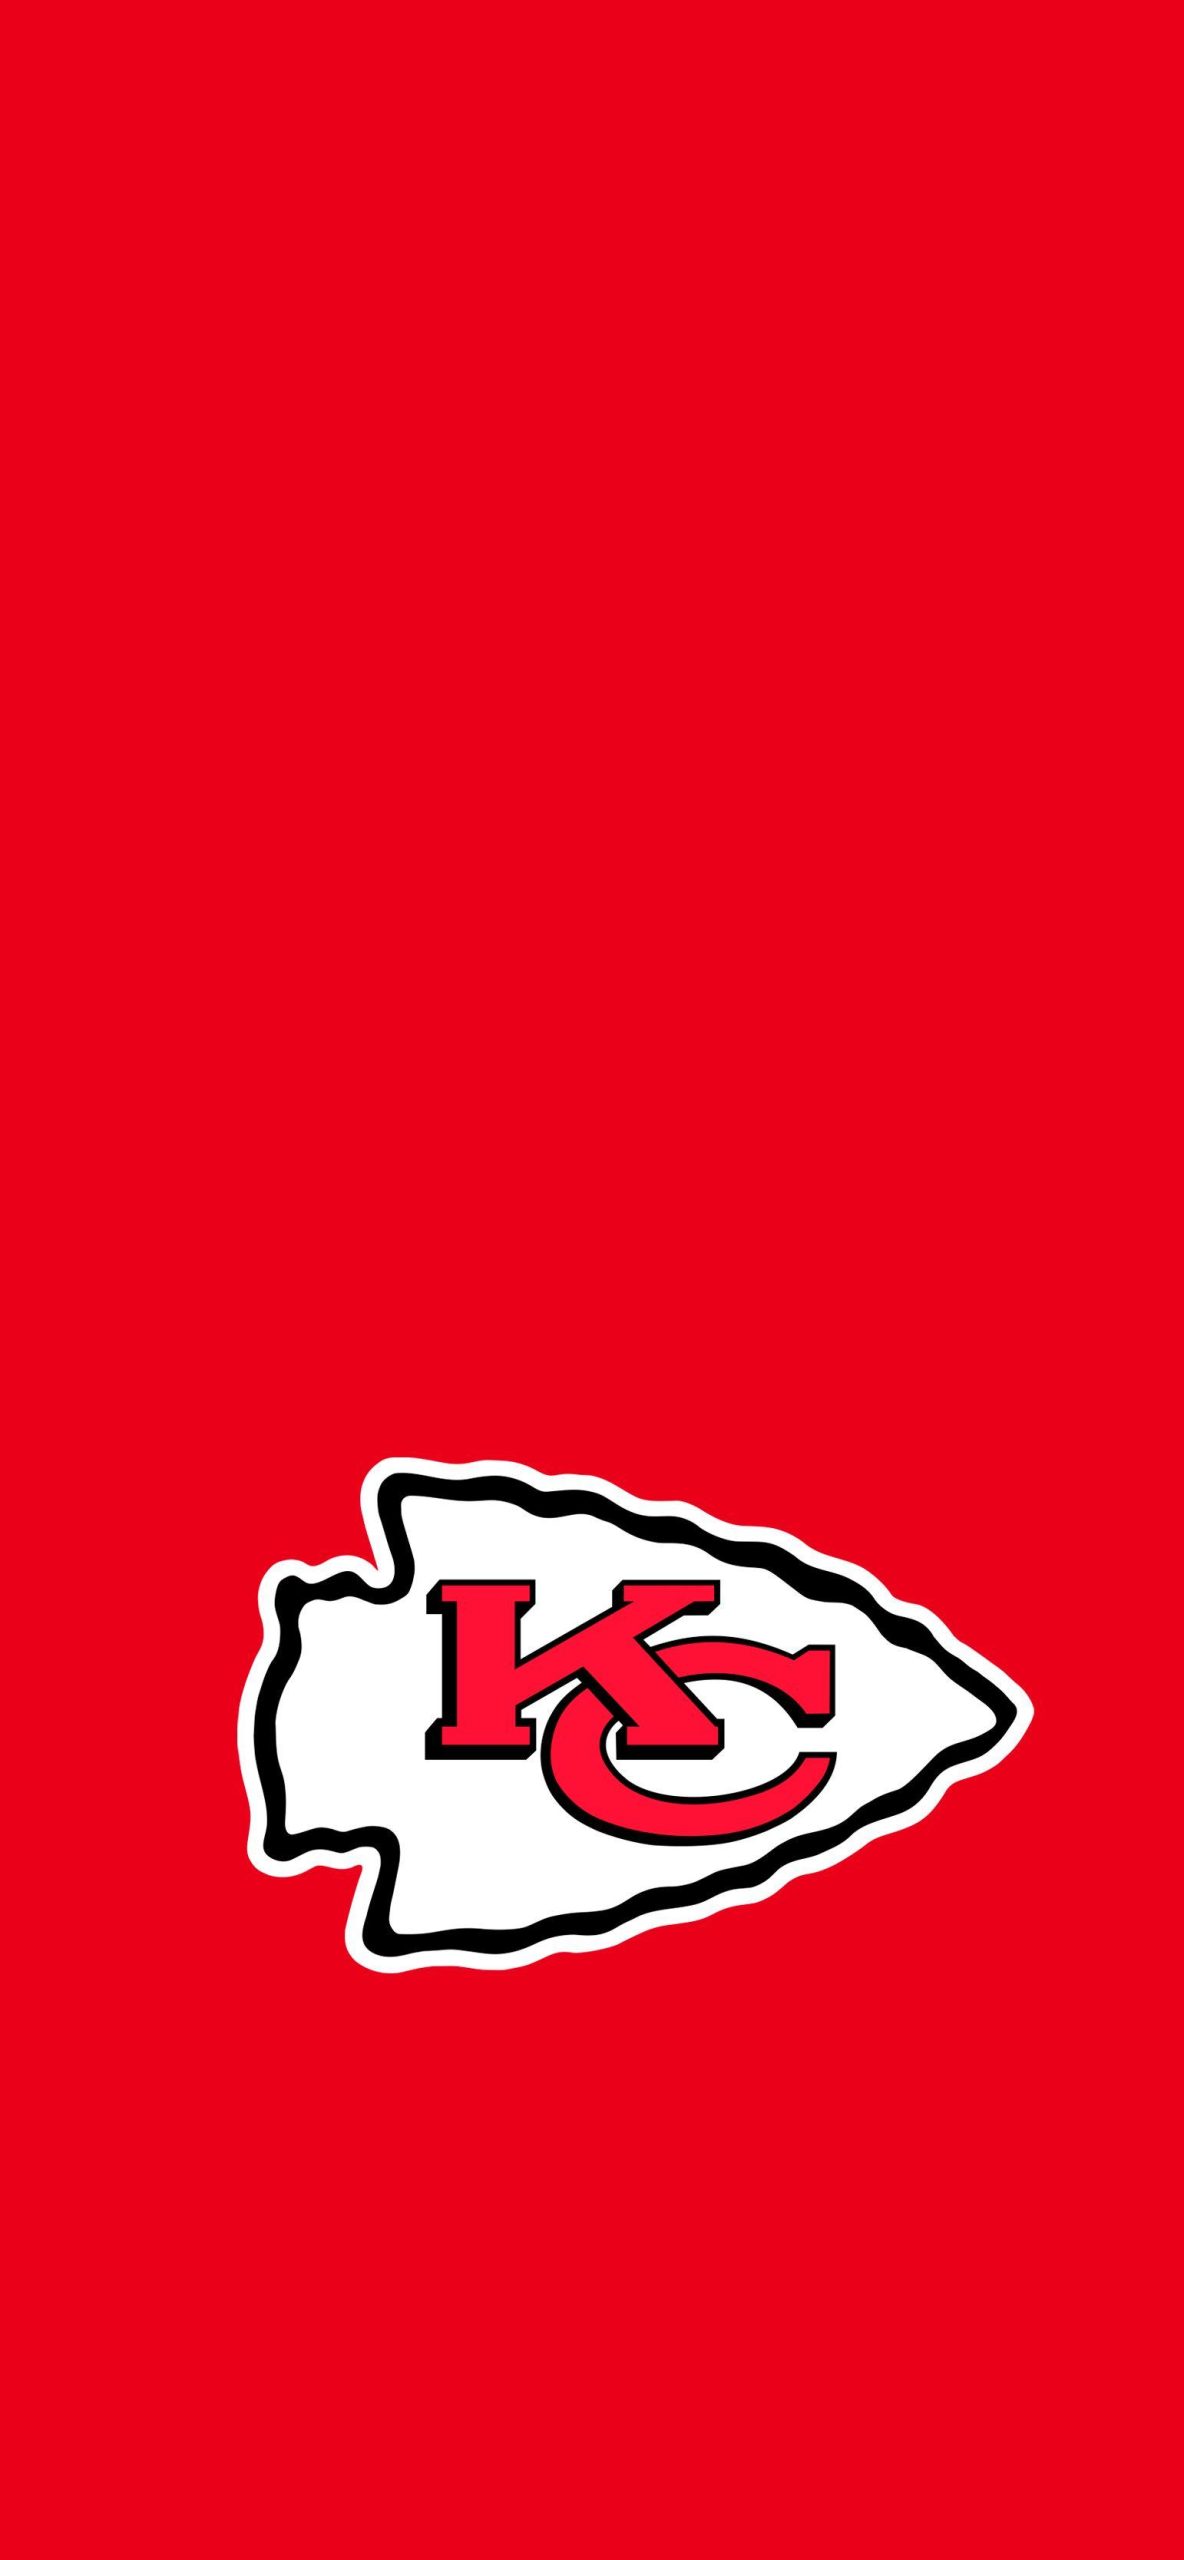 Kansas City Chiefs iPhone Wallpaper 4k